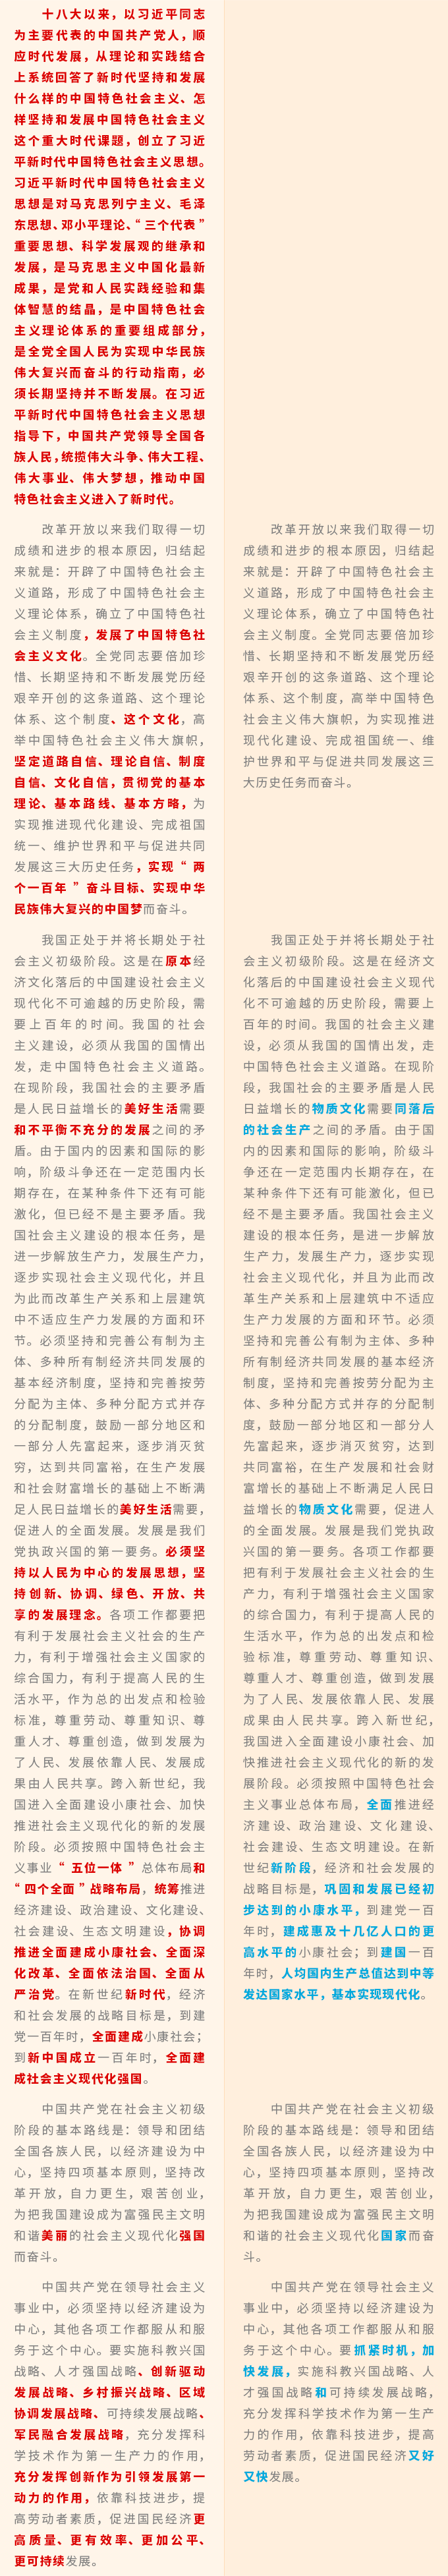 中国共产党章程3.png